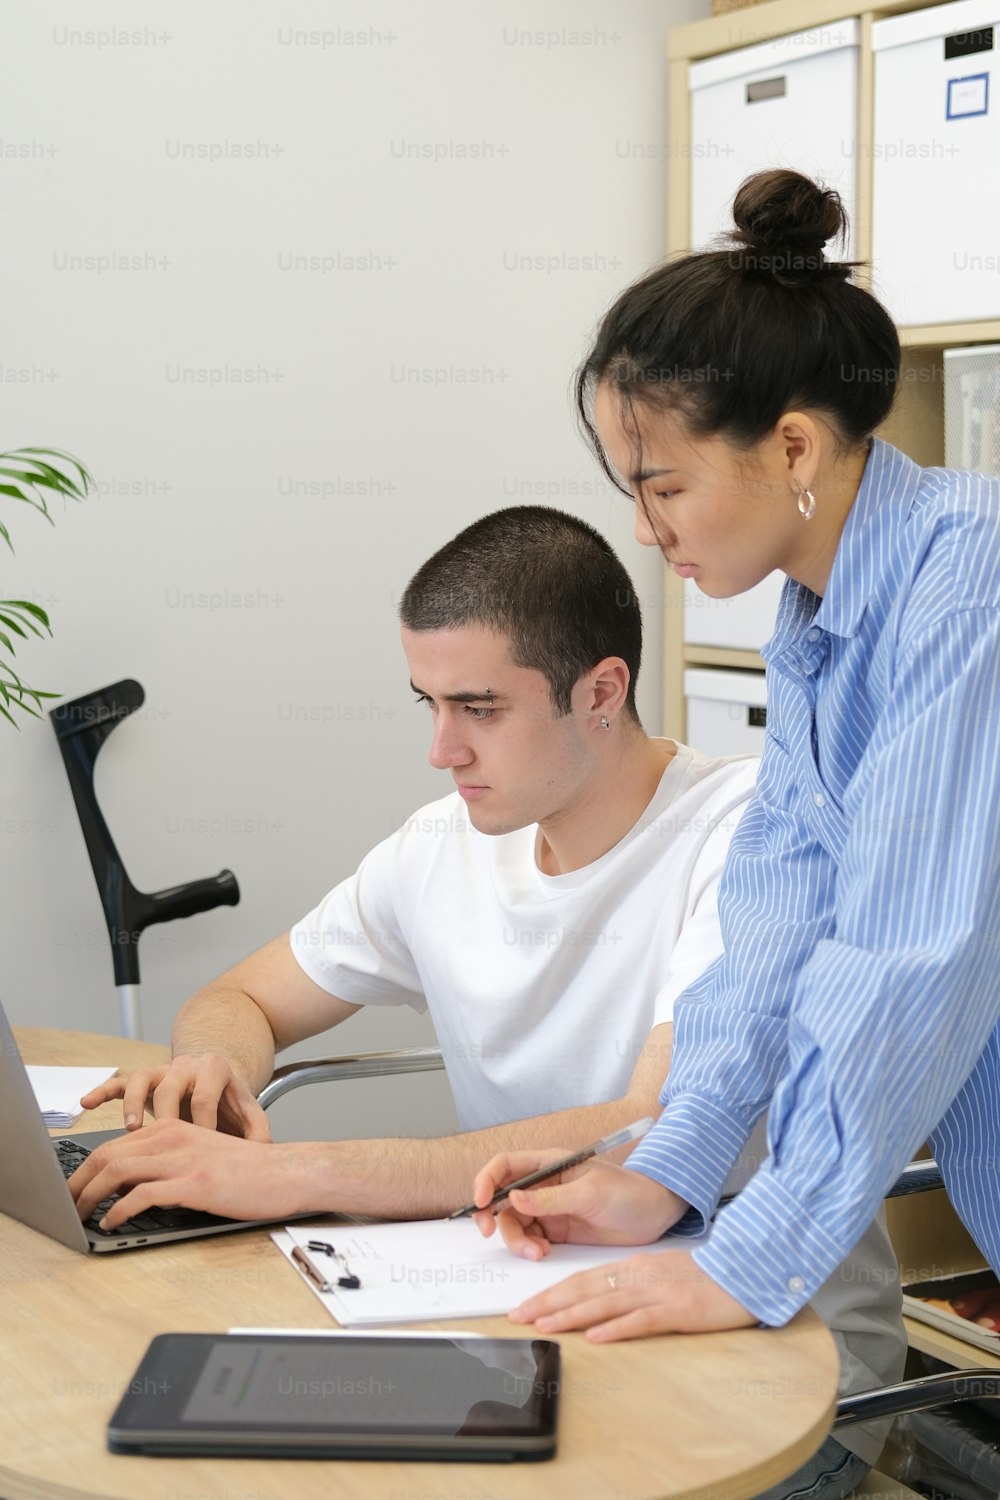 Un homme et une femme assis à une table travaillant sur un ordinateur portable